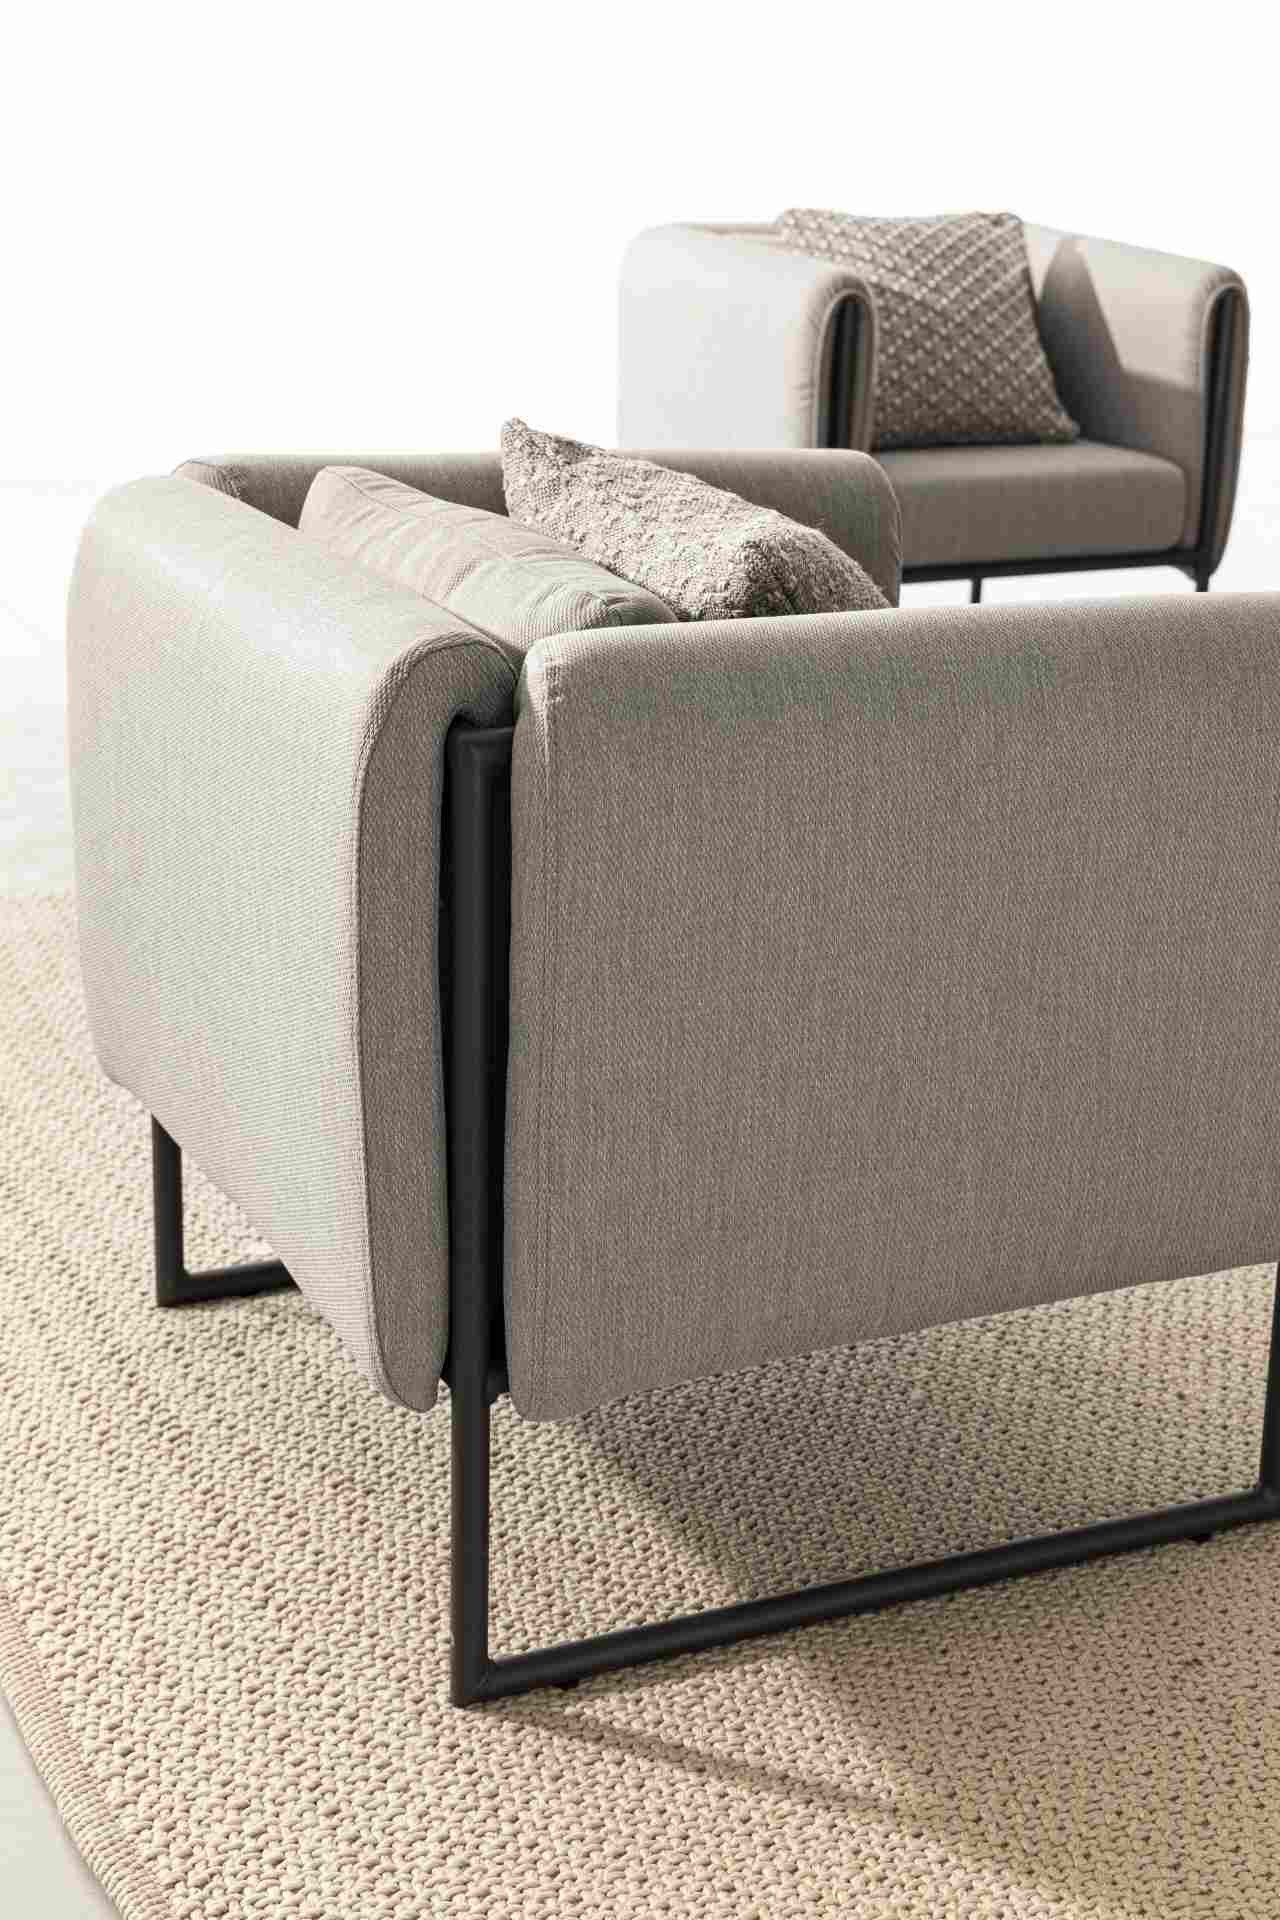 Der Gartensessel Pixel überzeugt mit seinem modernen Design. Gefertigt wurde er aus Olefin-Stoff, welcher einen grauen Farbton besitzt. Das Gestell ist aus Aluminium und hat eine schwarze Farbe. Der Sessel verfügt über eine Sitzhöhe von 42 cm und ist für 